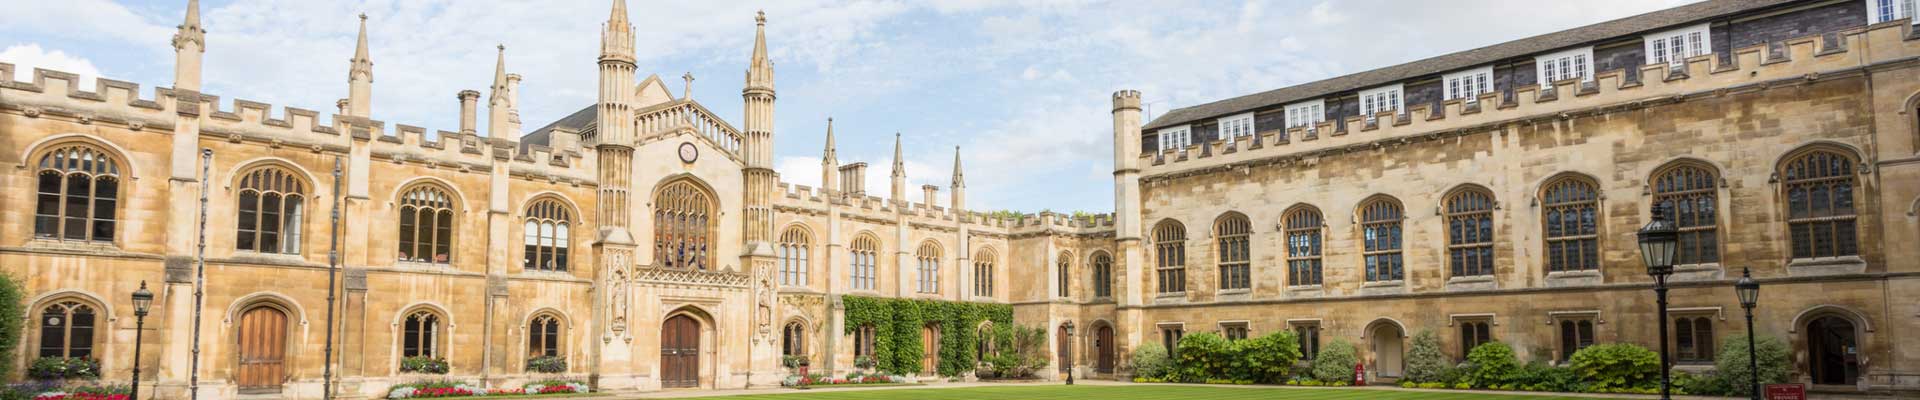 Bucksmore Education- Oxford International College Oxford Yaz Okulu görseli